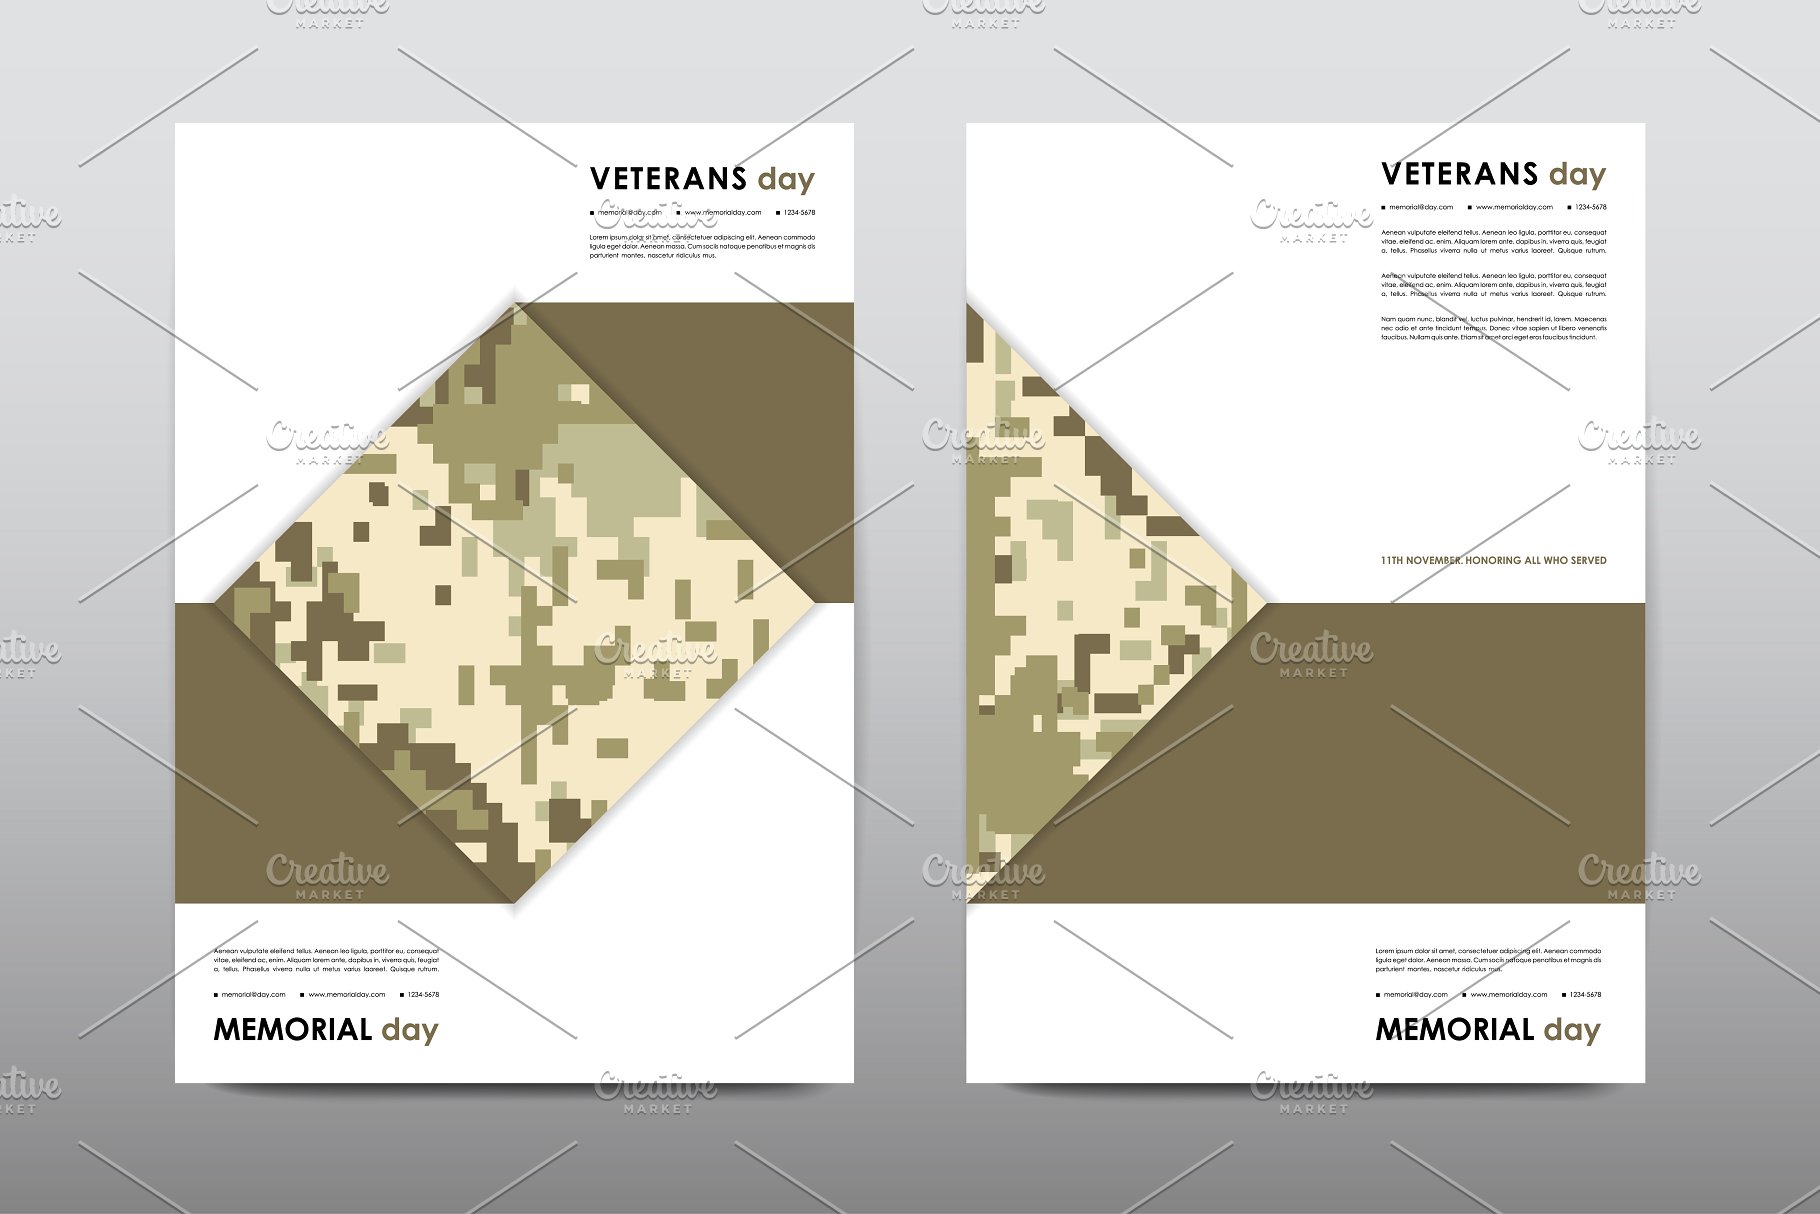 40+老兵节军人宣传小册模板 Veteran’s Day Brochures Bundle插图(27)